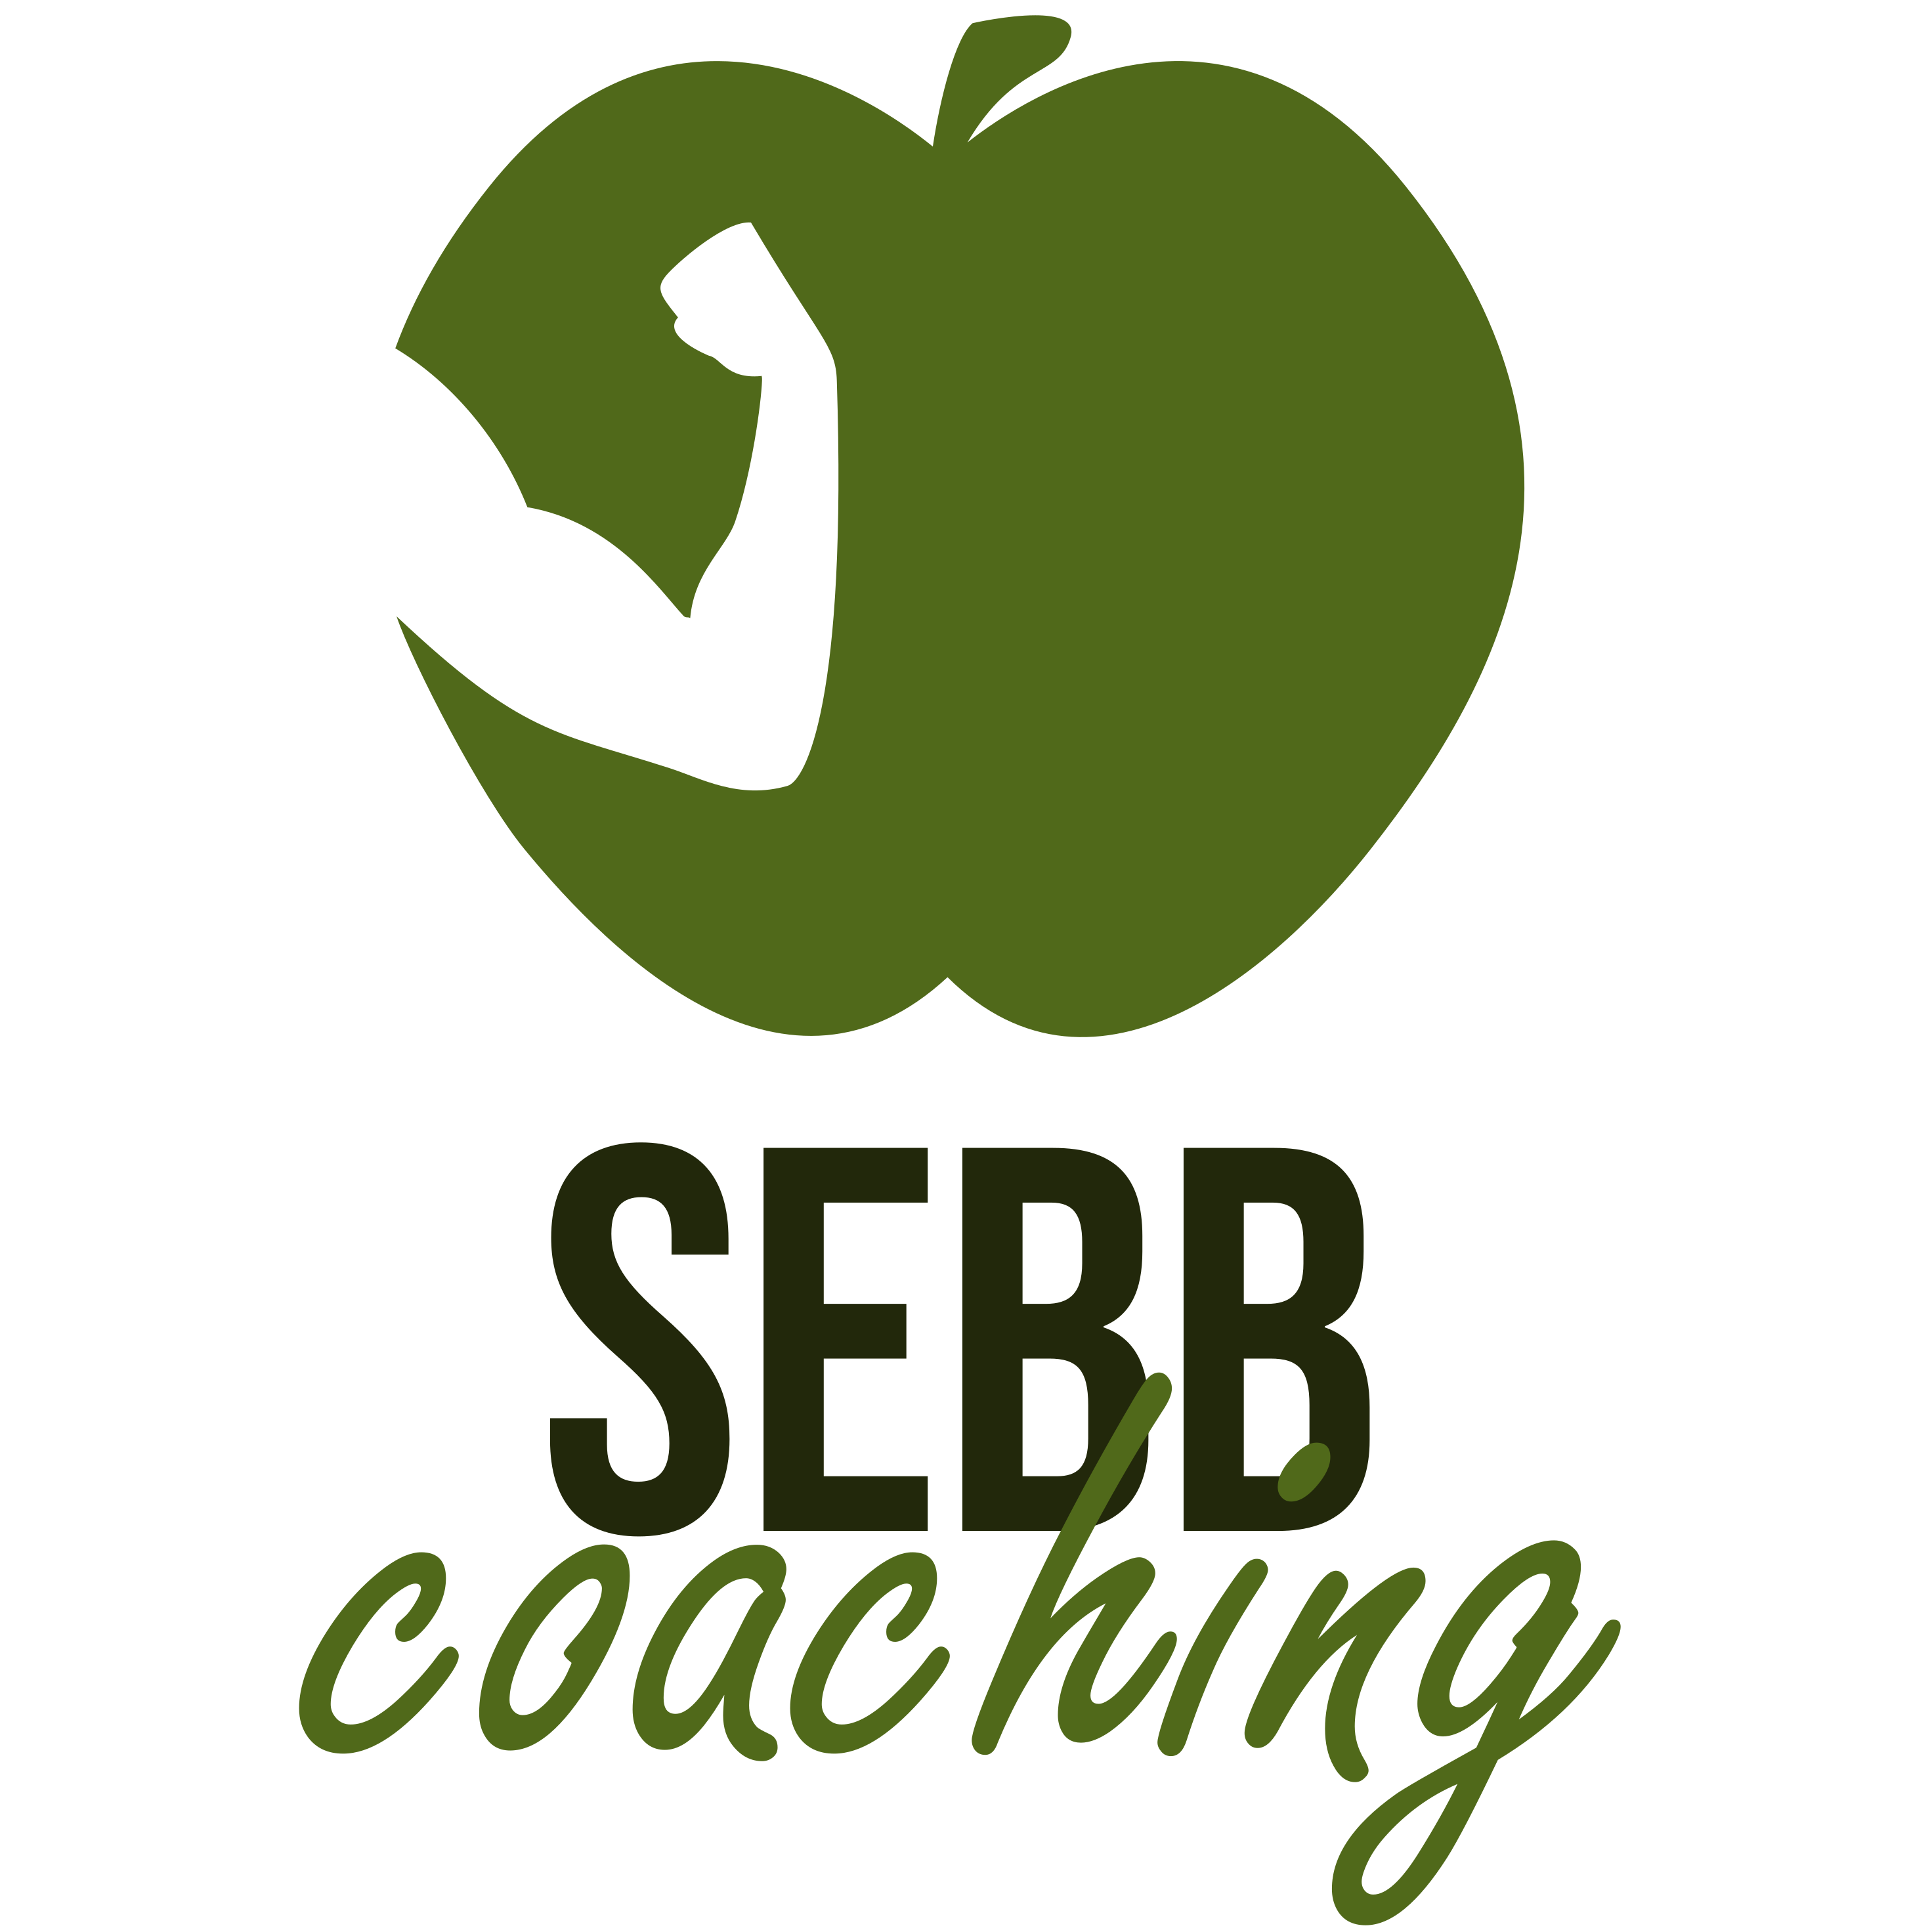 Sebbcoaching-Sébastien Barthoulot, nutritionniste et coach sportif